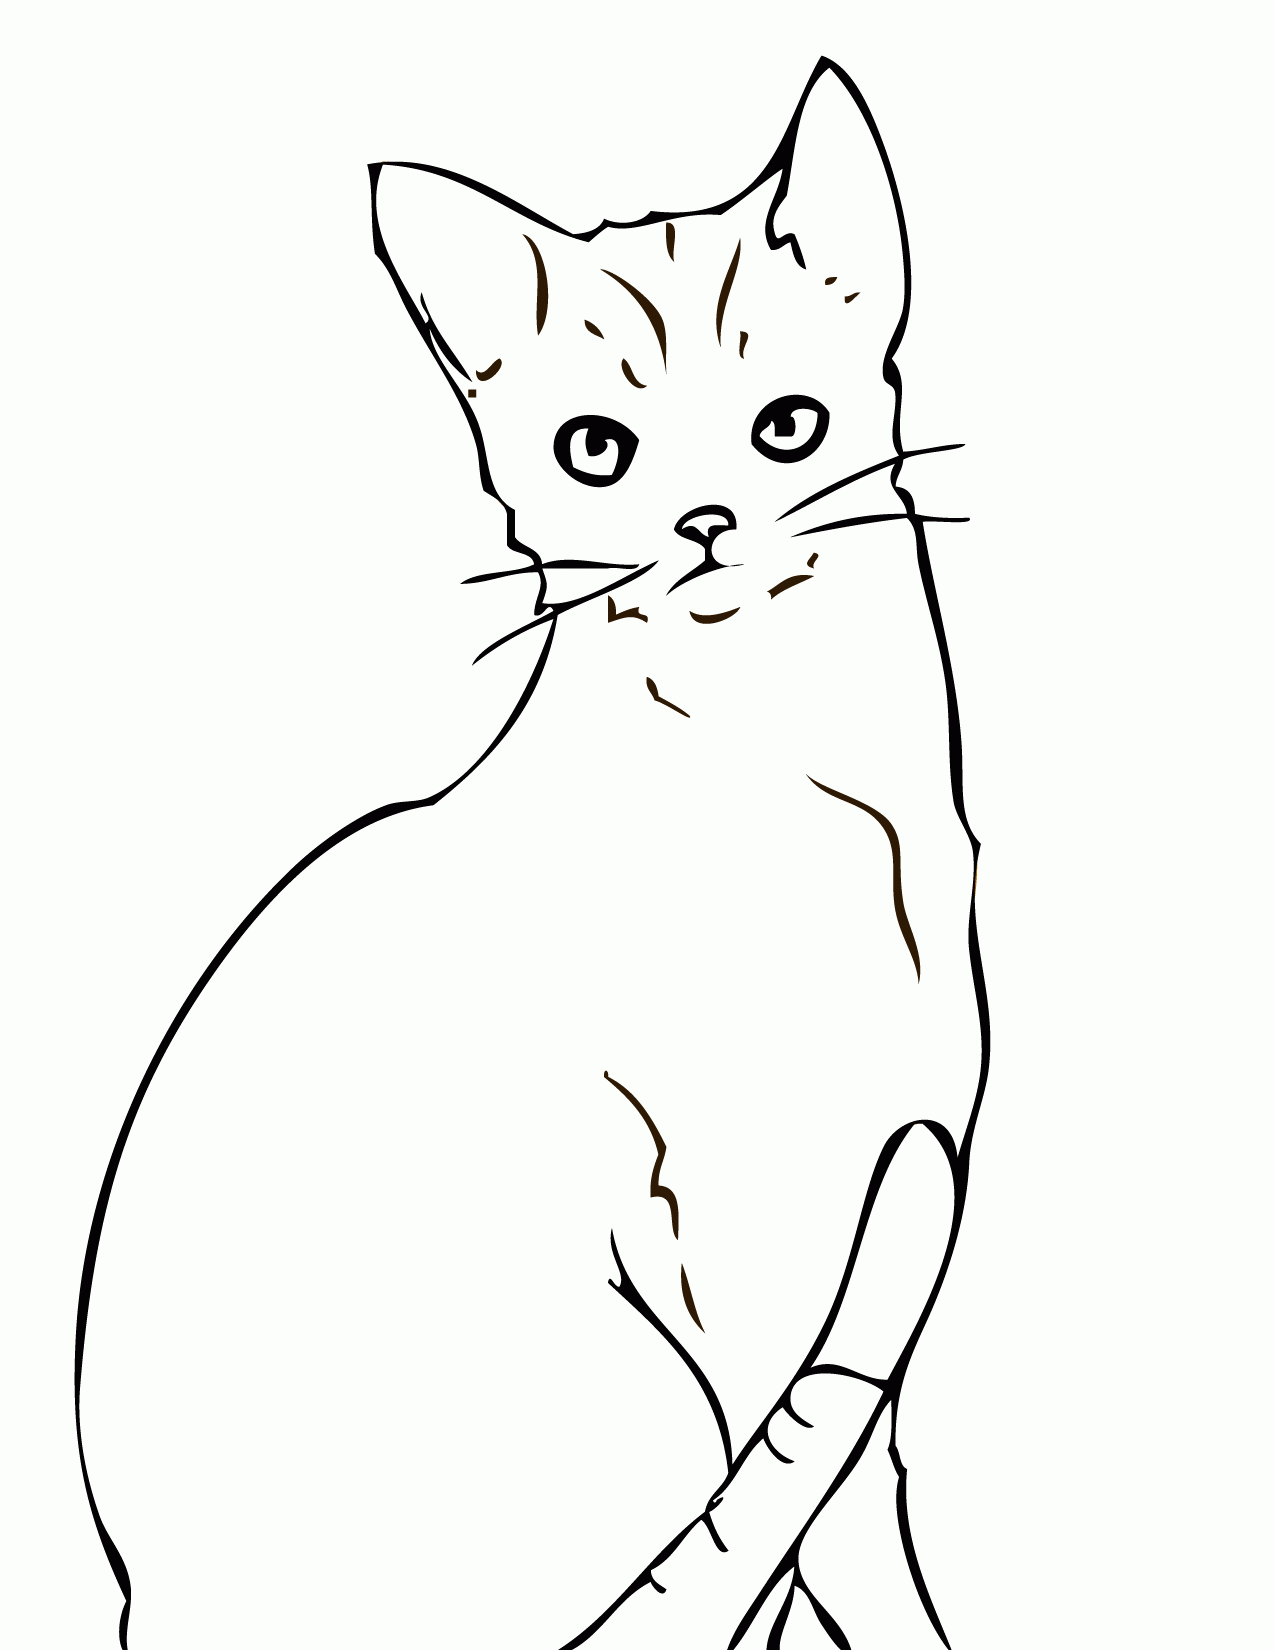 Kolorowanka kot otyły siedzi ze złą twarzą i uniesionymi uszami